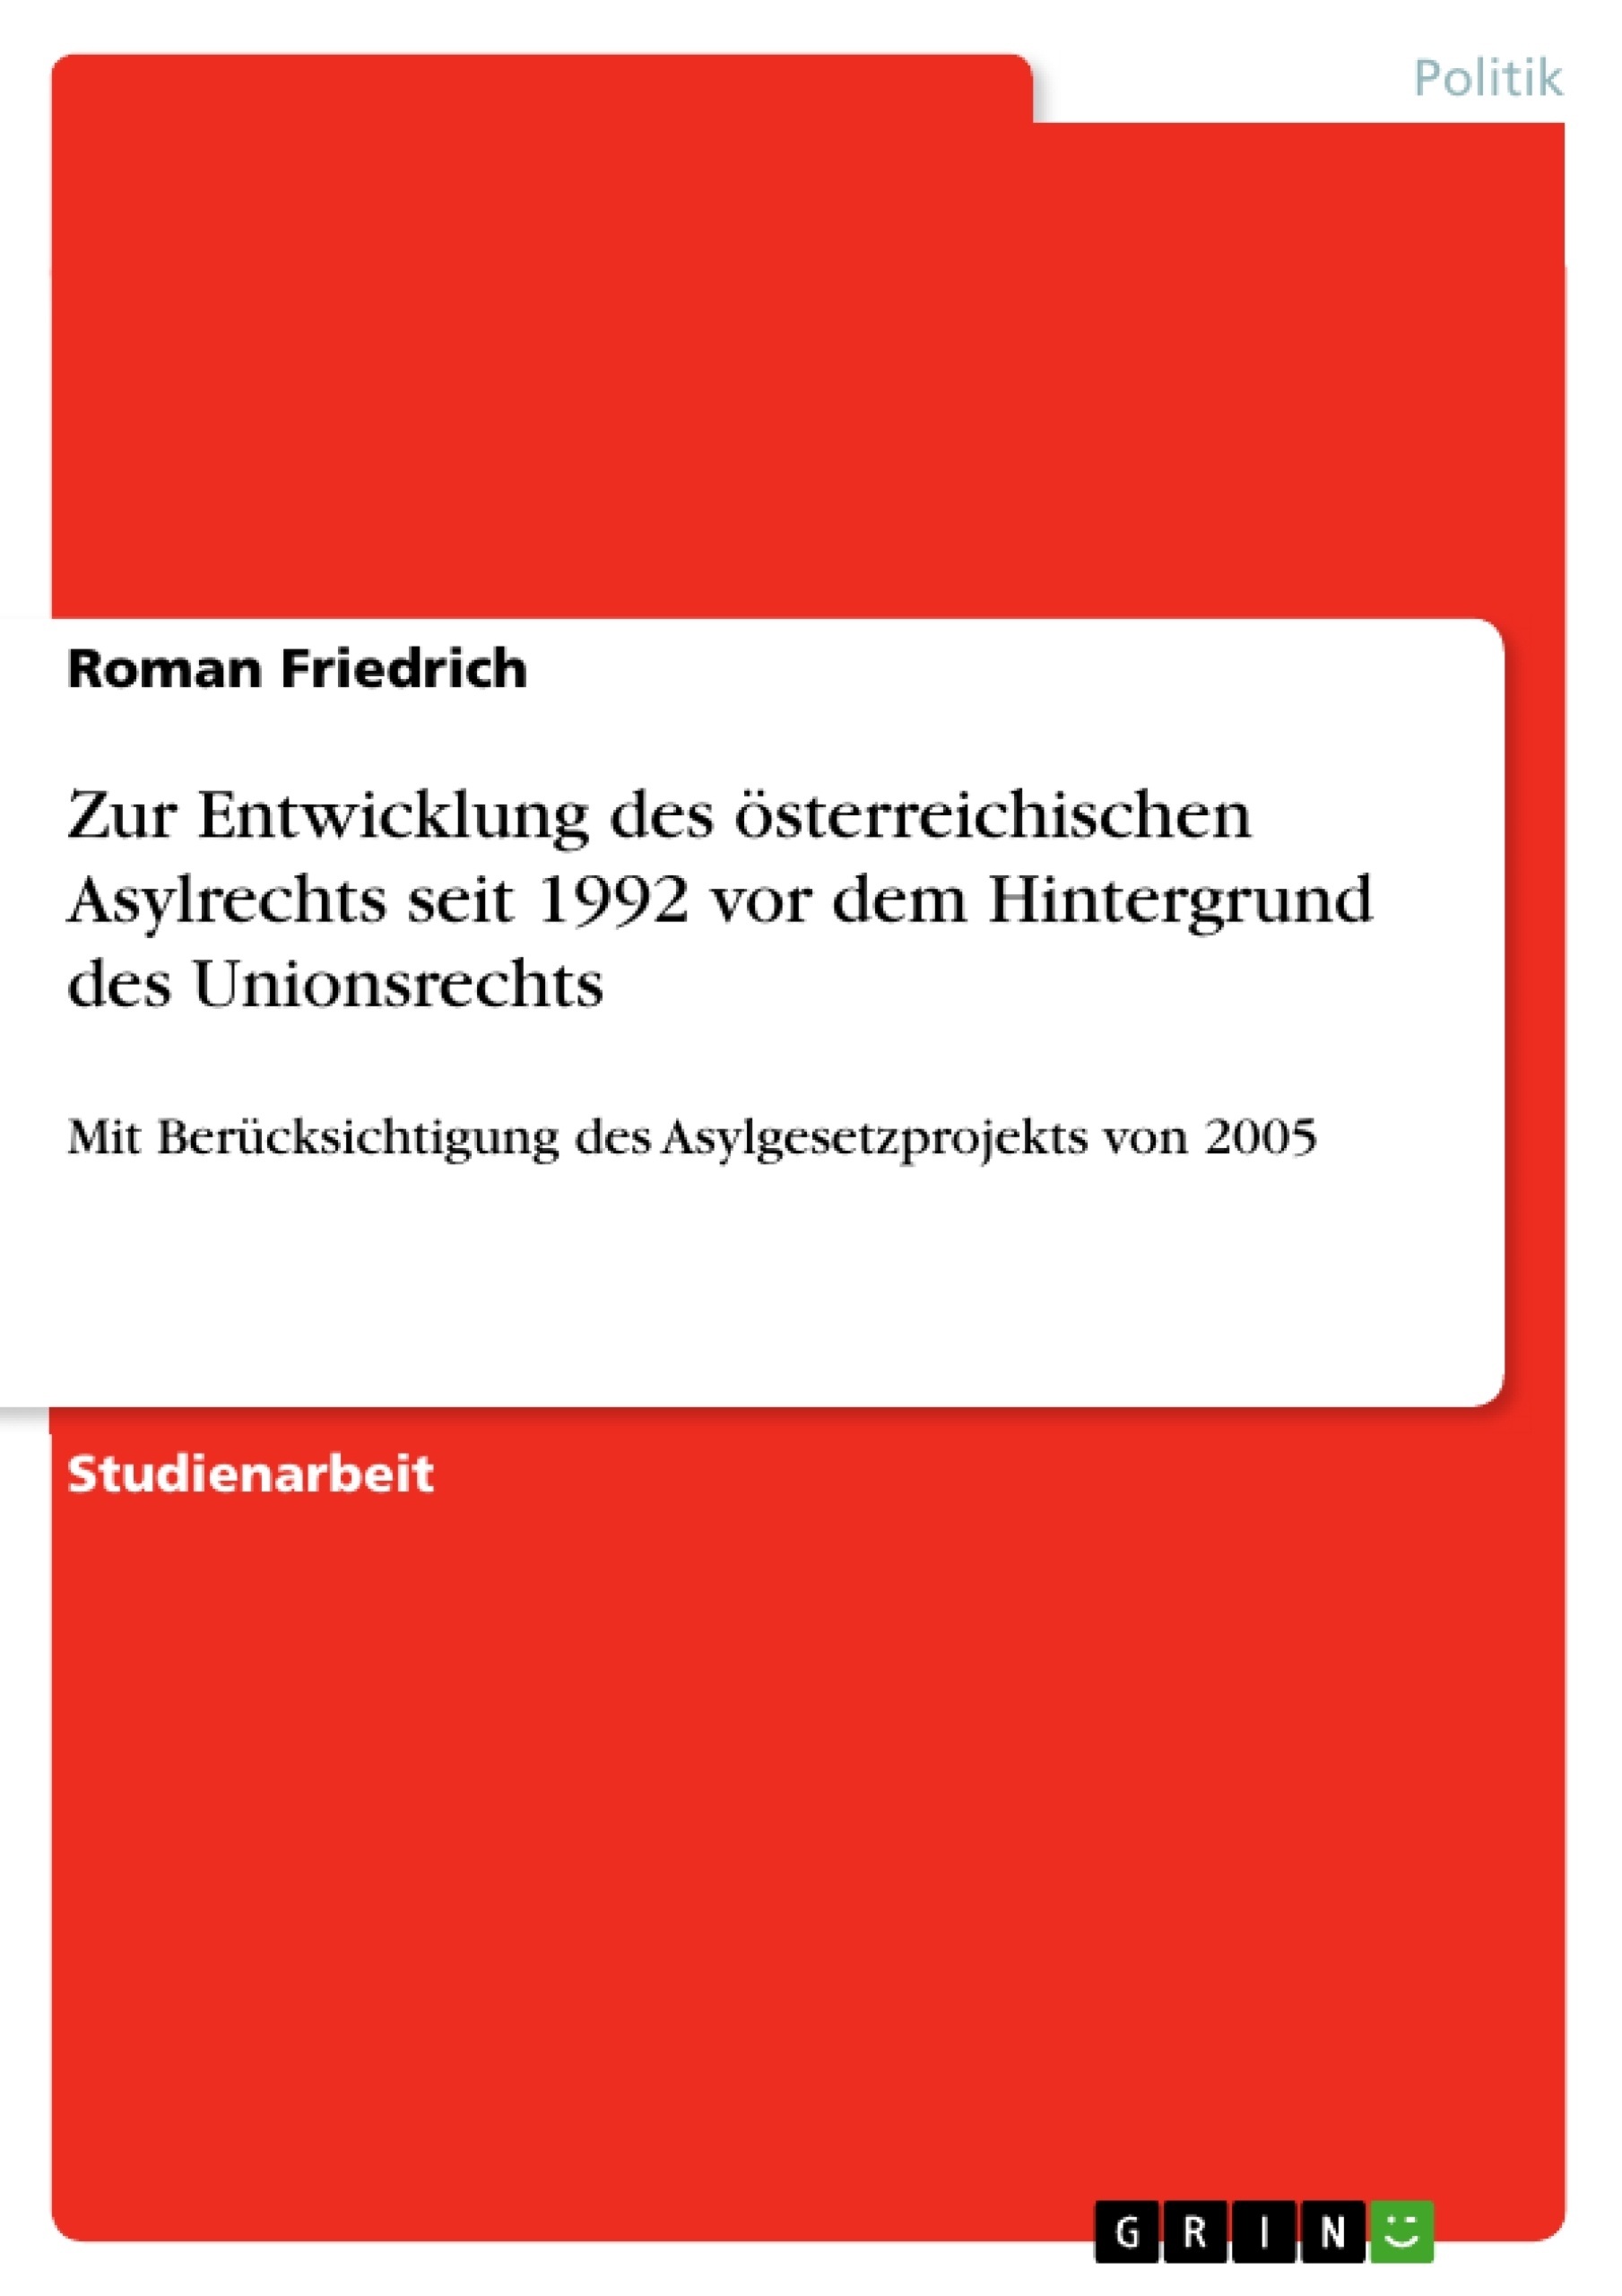 Título: Zur Entwicklung des österreichischen Asylrechts seit 1992 vor dem Hintergrund des Unionsrechts